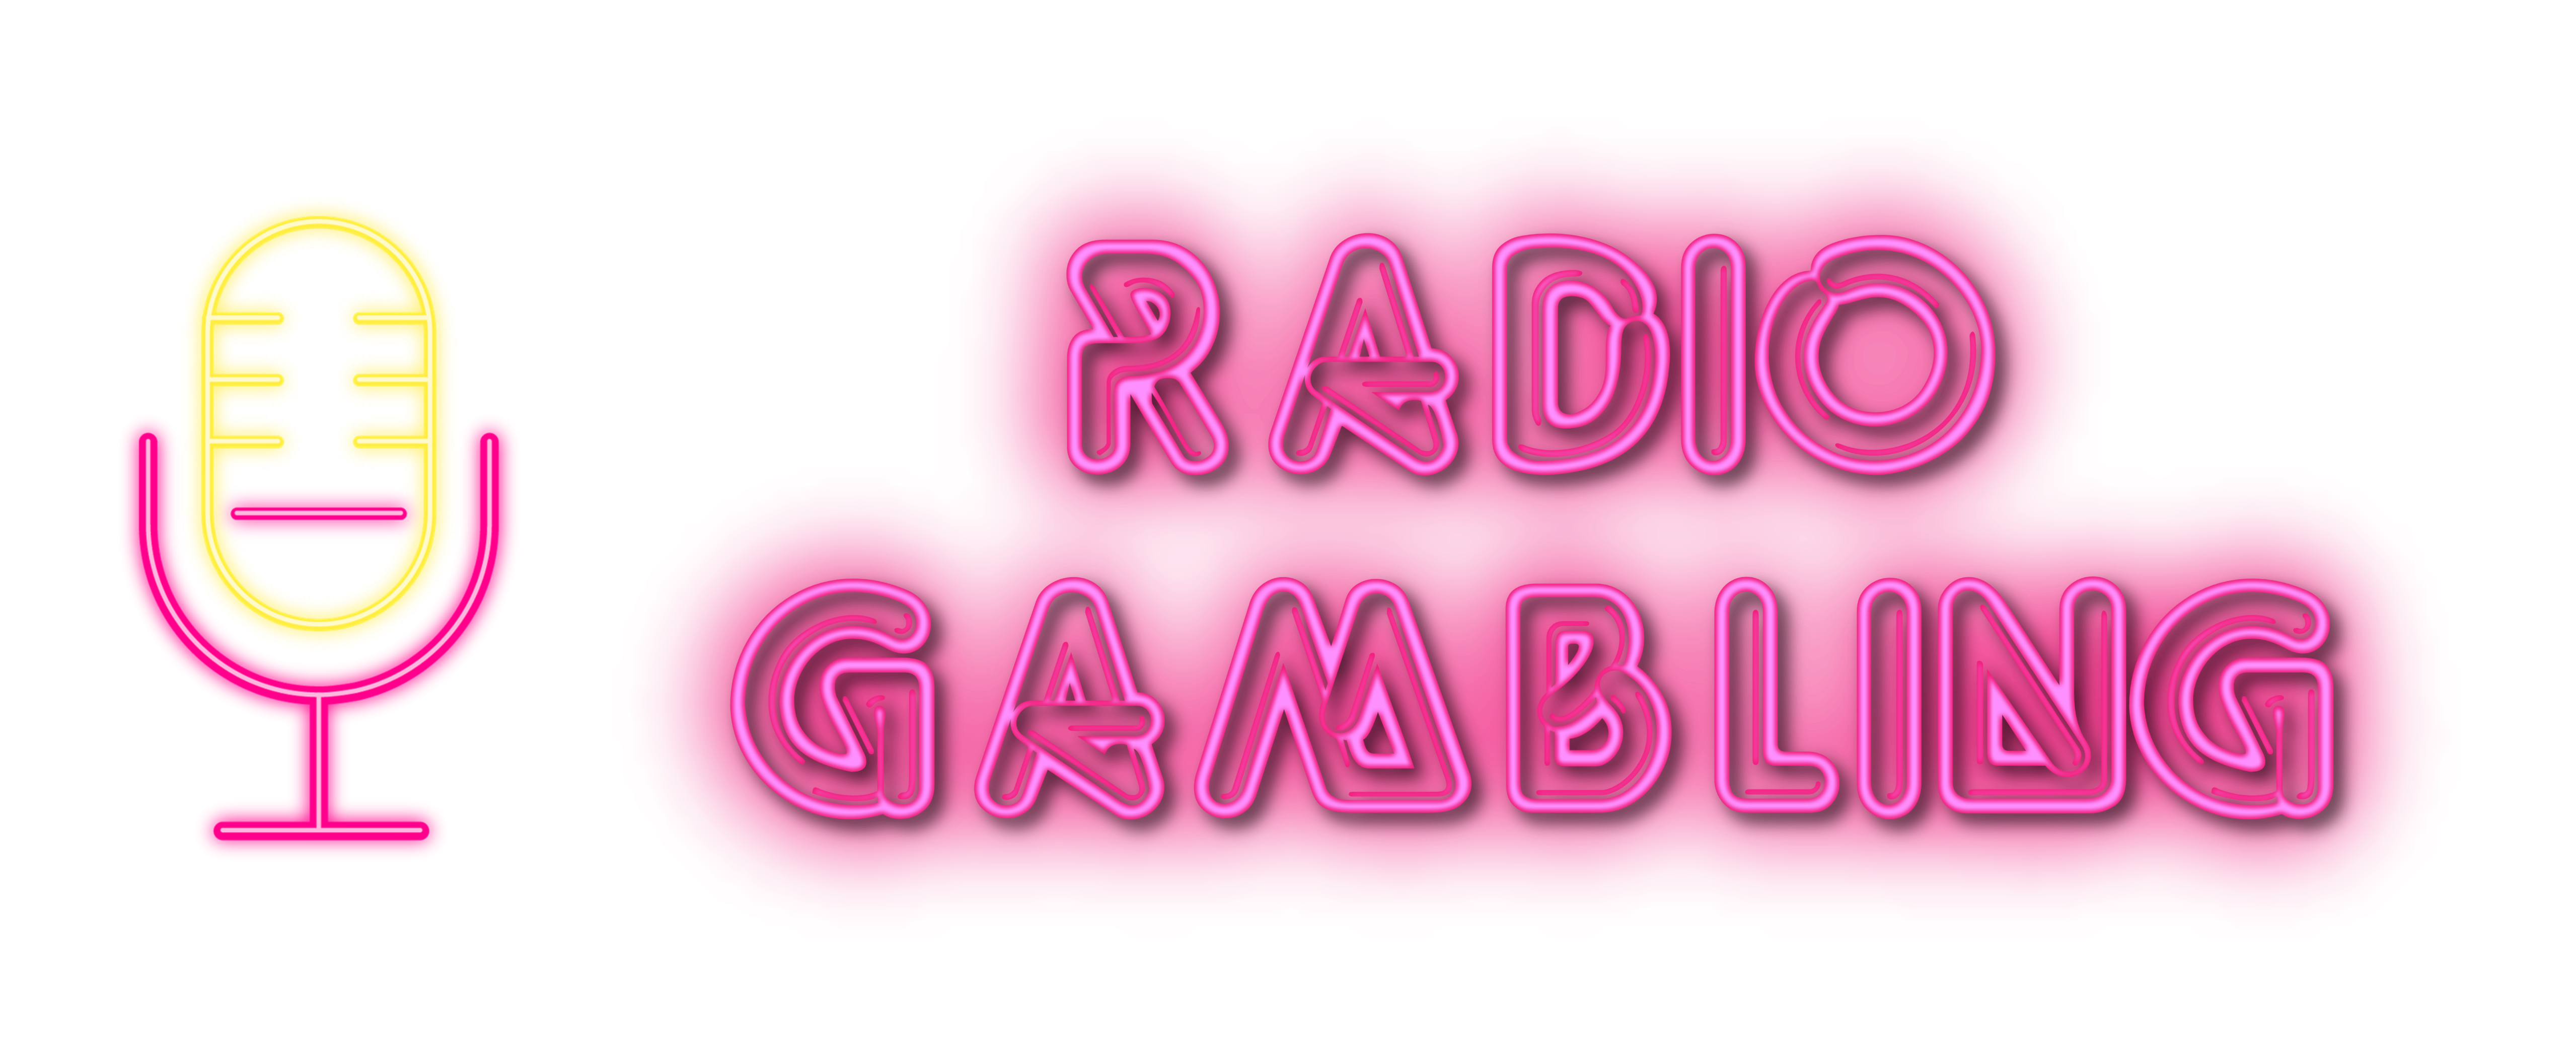 RADIO GAMBLING